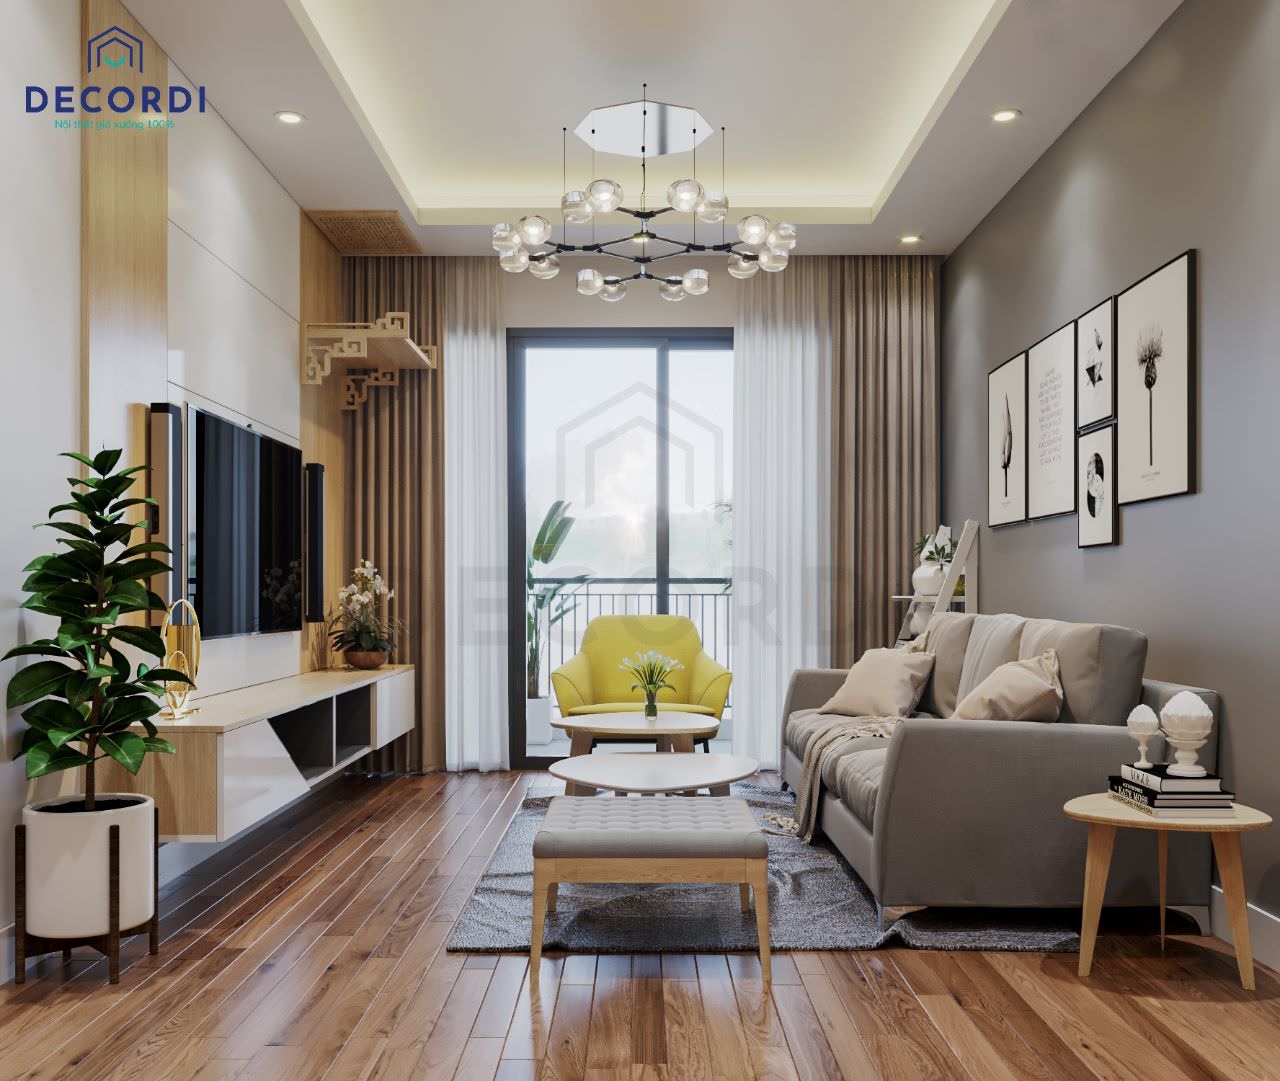 8 mẫu thiết kế nhà chung cư đẹp 70m2 hiện đại bậc nhất 2019